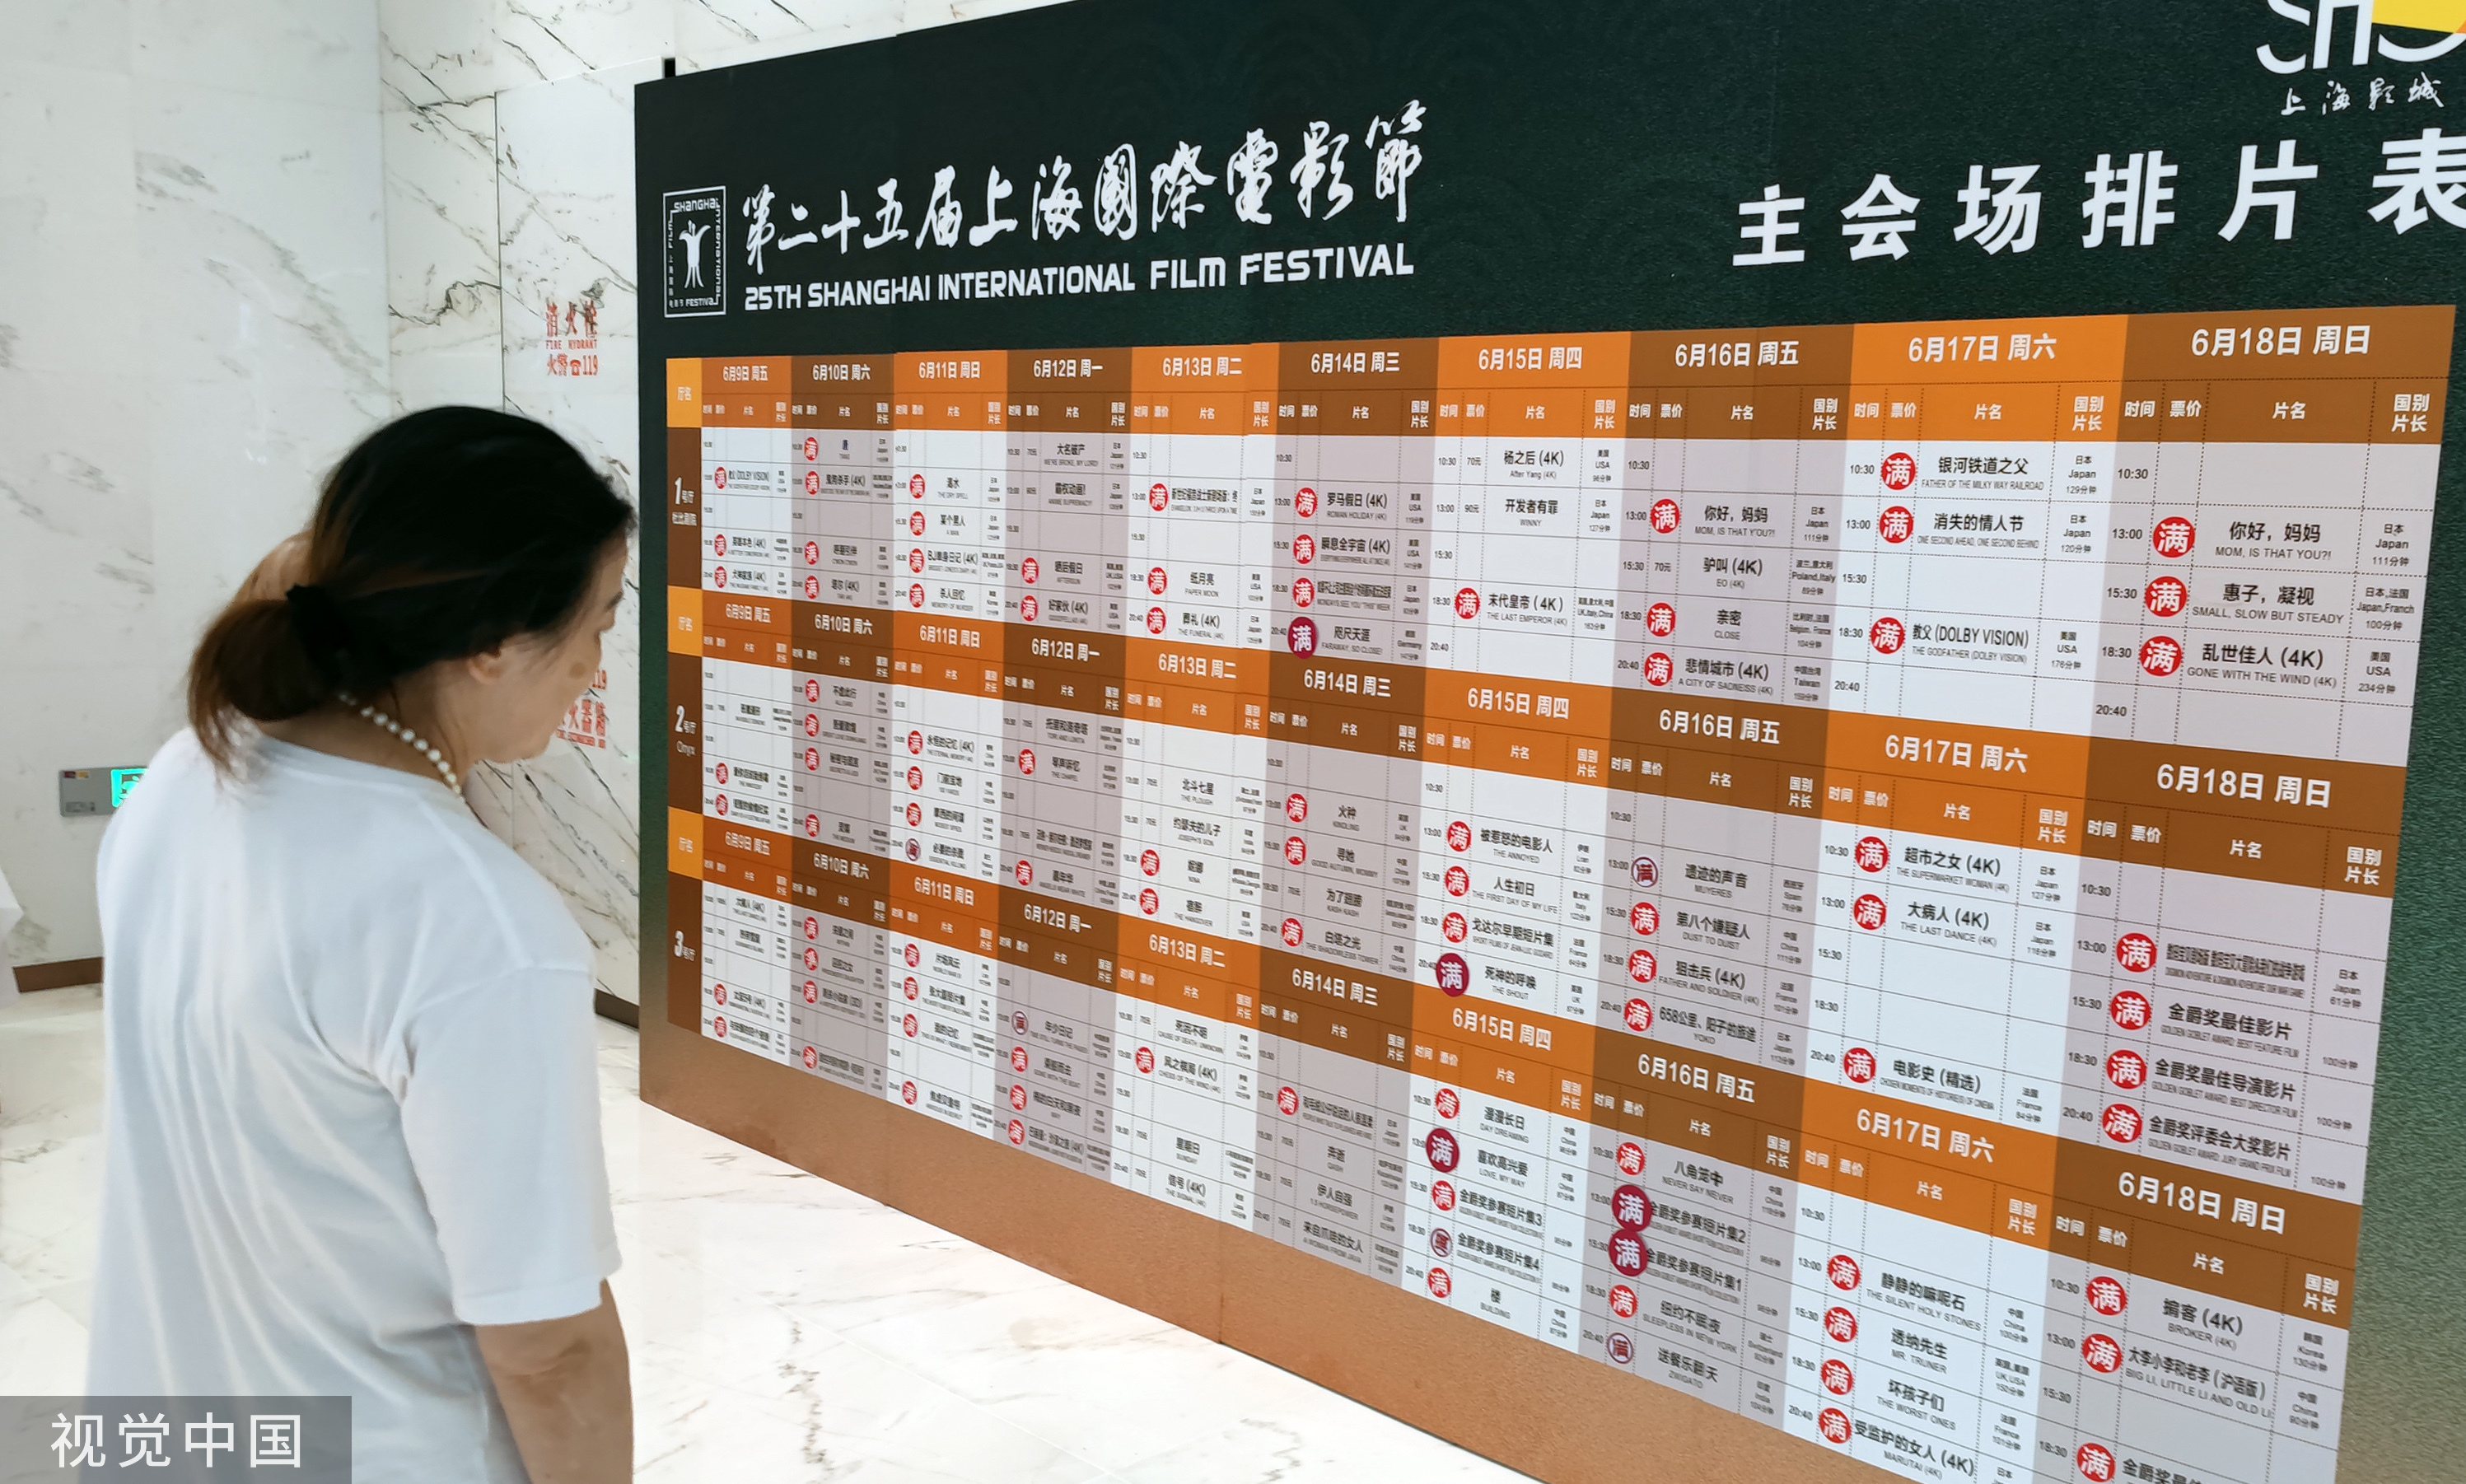 2023年6月18日，上海国际片子节终结日，本日照常招引繁多影迷观影，票房水爆排片表兼“满座” ，影迷抢票拼足速。（图源：视觉中国）